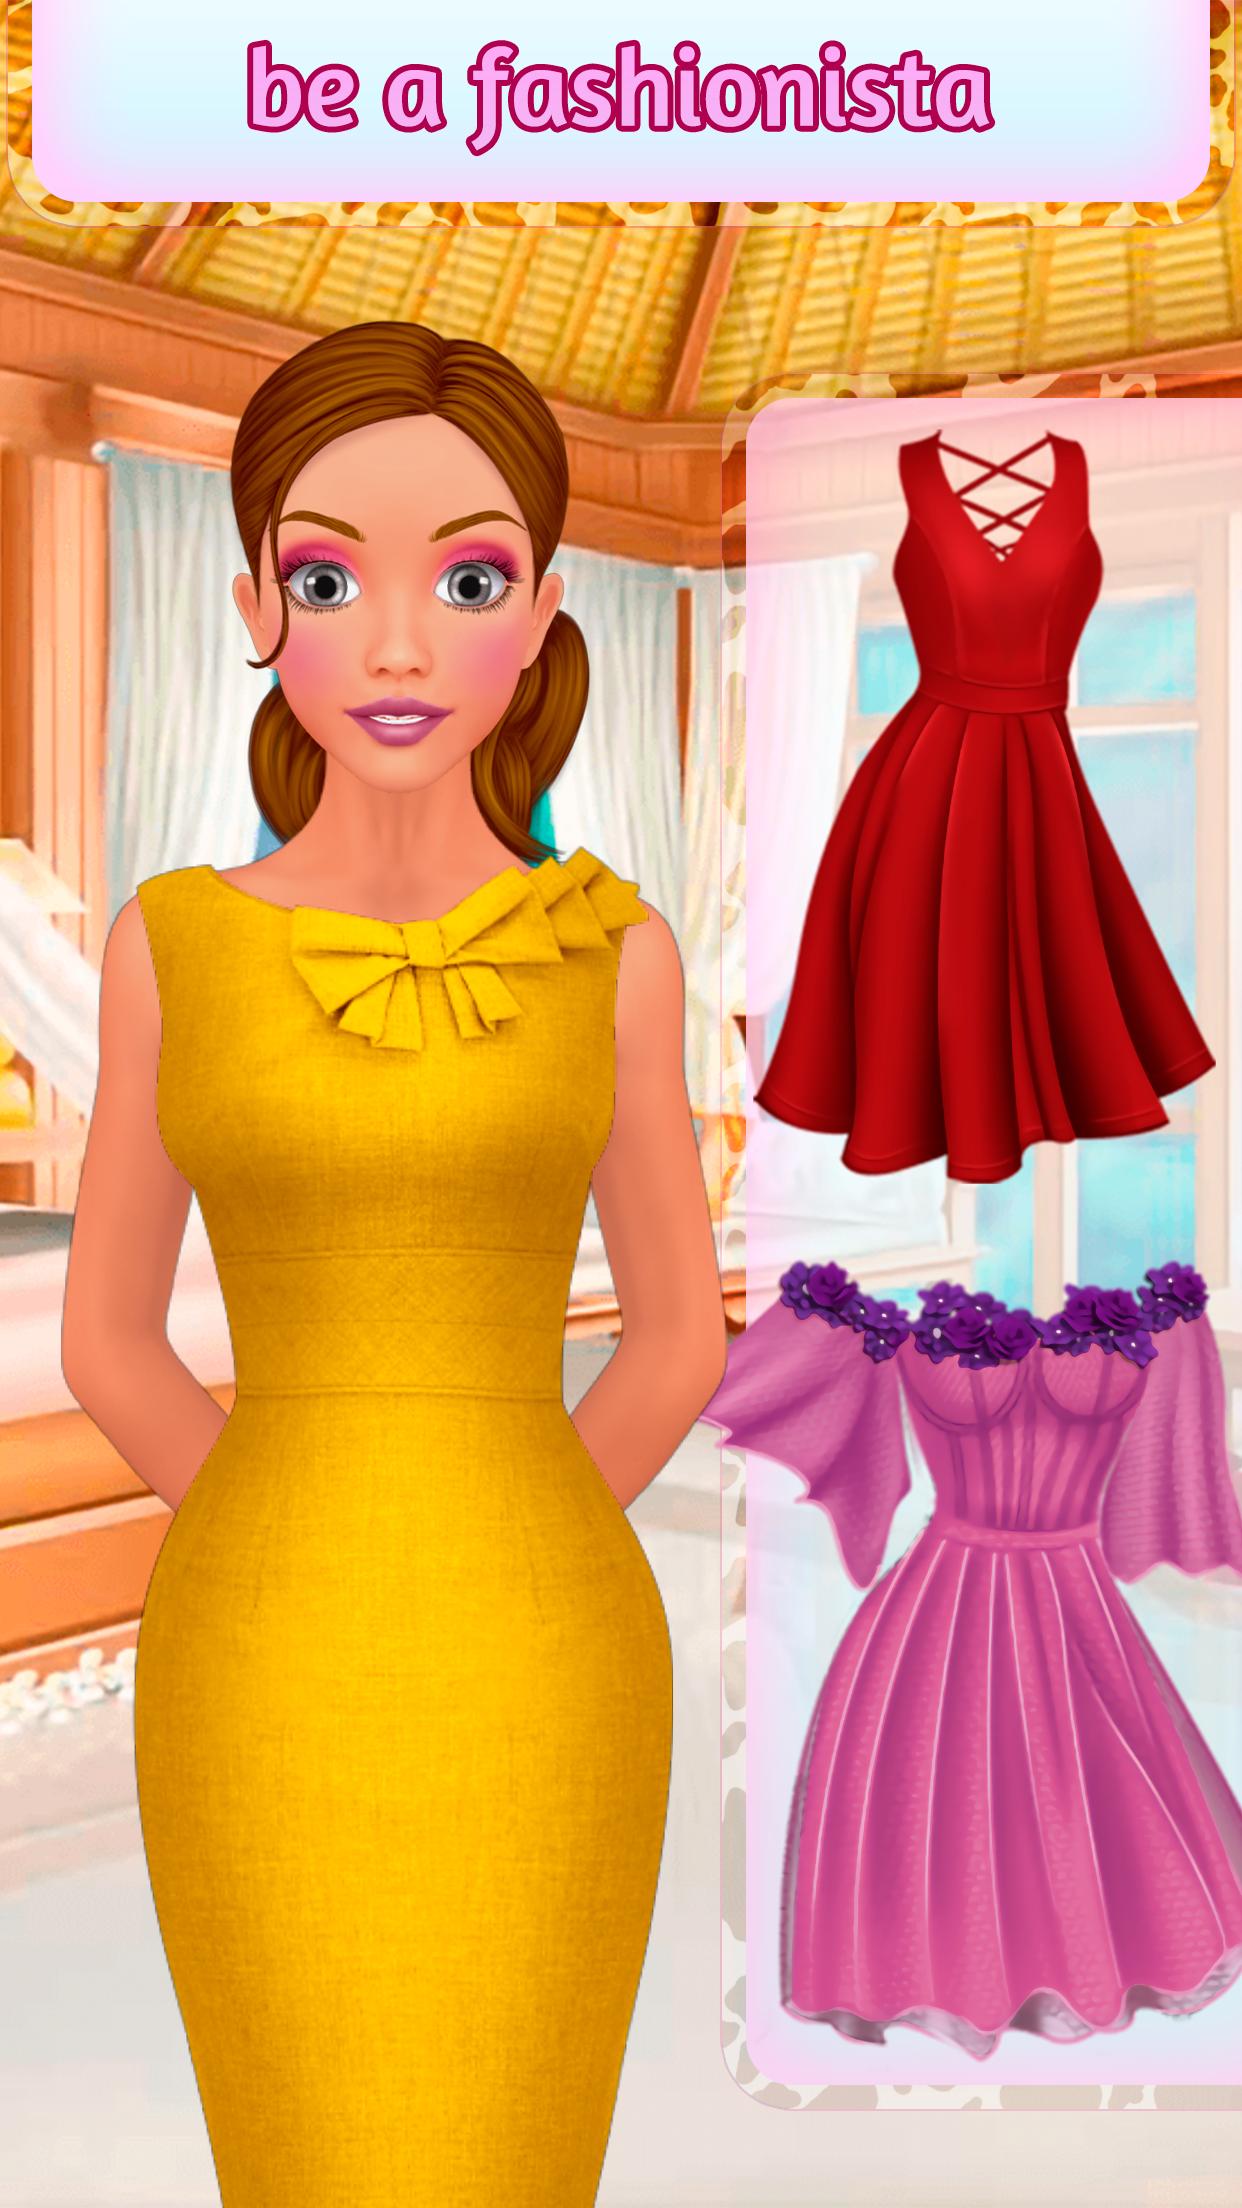 Juegos de Vestir a Chicas: Maquillar Princesas for Android - APK Download